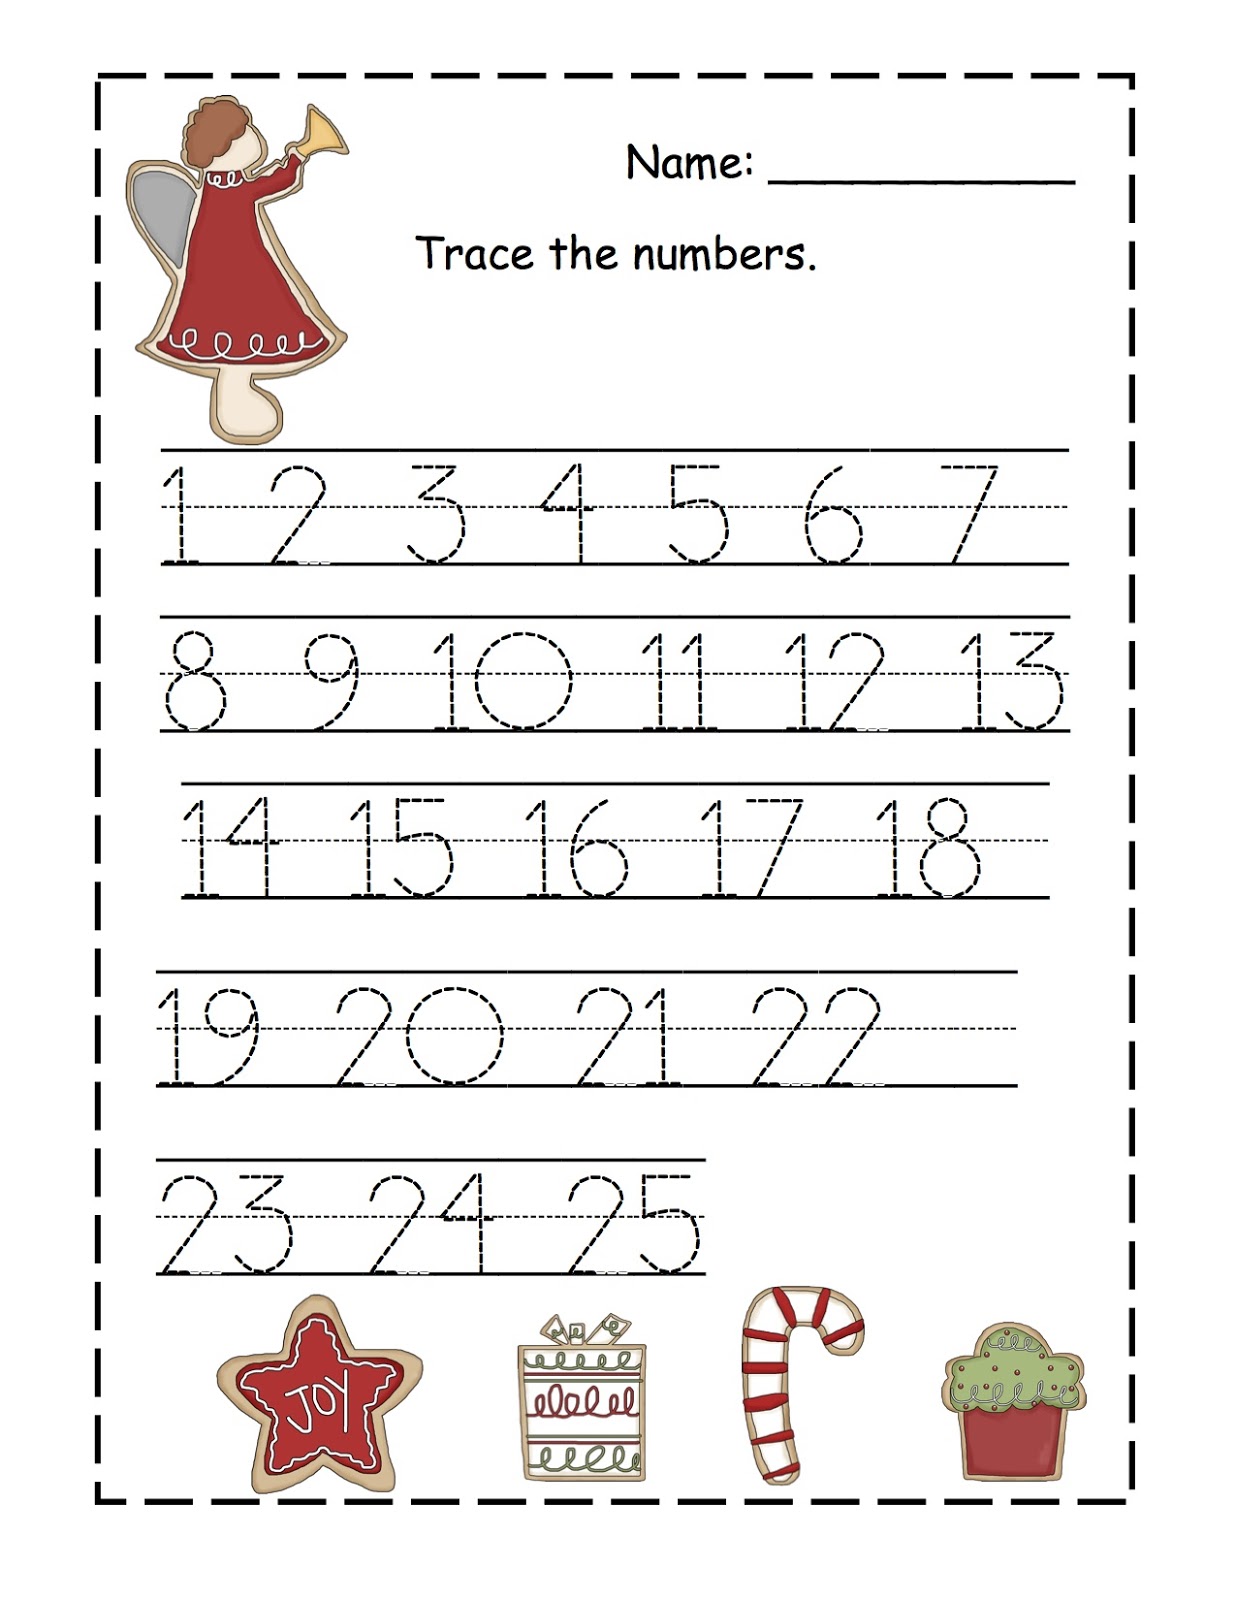 7 Best Images of Preschool Numbers 11 20 Printables - Tracing Numbers